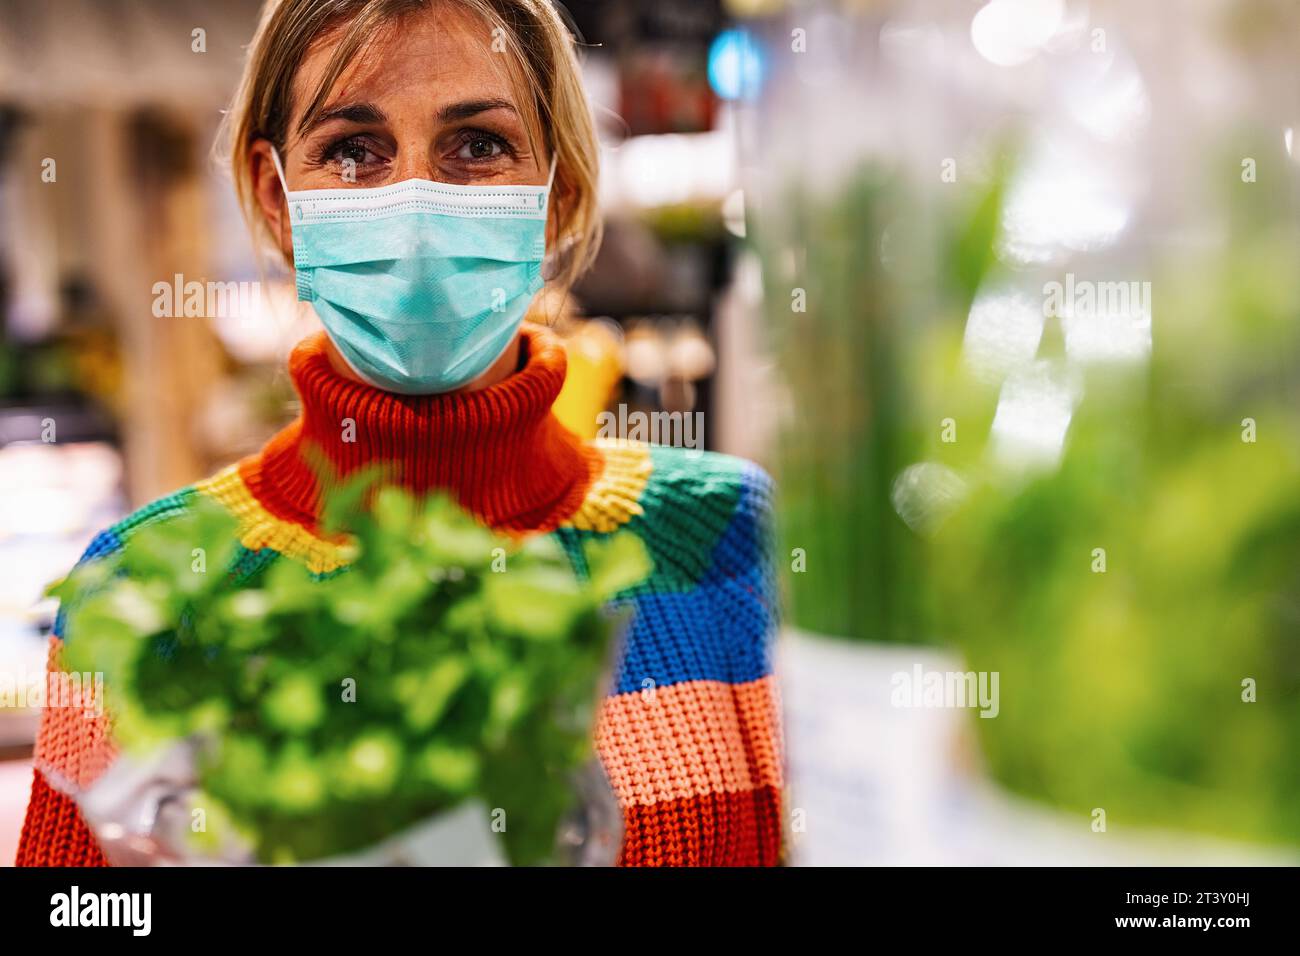 la donna che indossa una maschera facciale azzurra esamina il basilico fresco in un vivace negozio di alimentari o supermercato, circondato da una vasta gamma di prodotti. Sicurezza corona Foto Stock